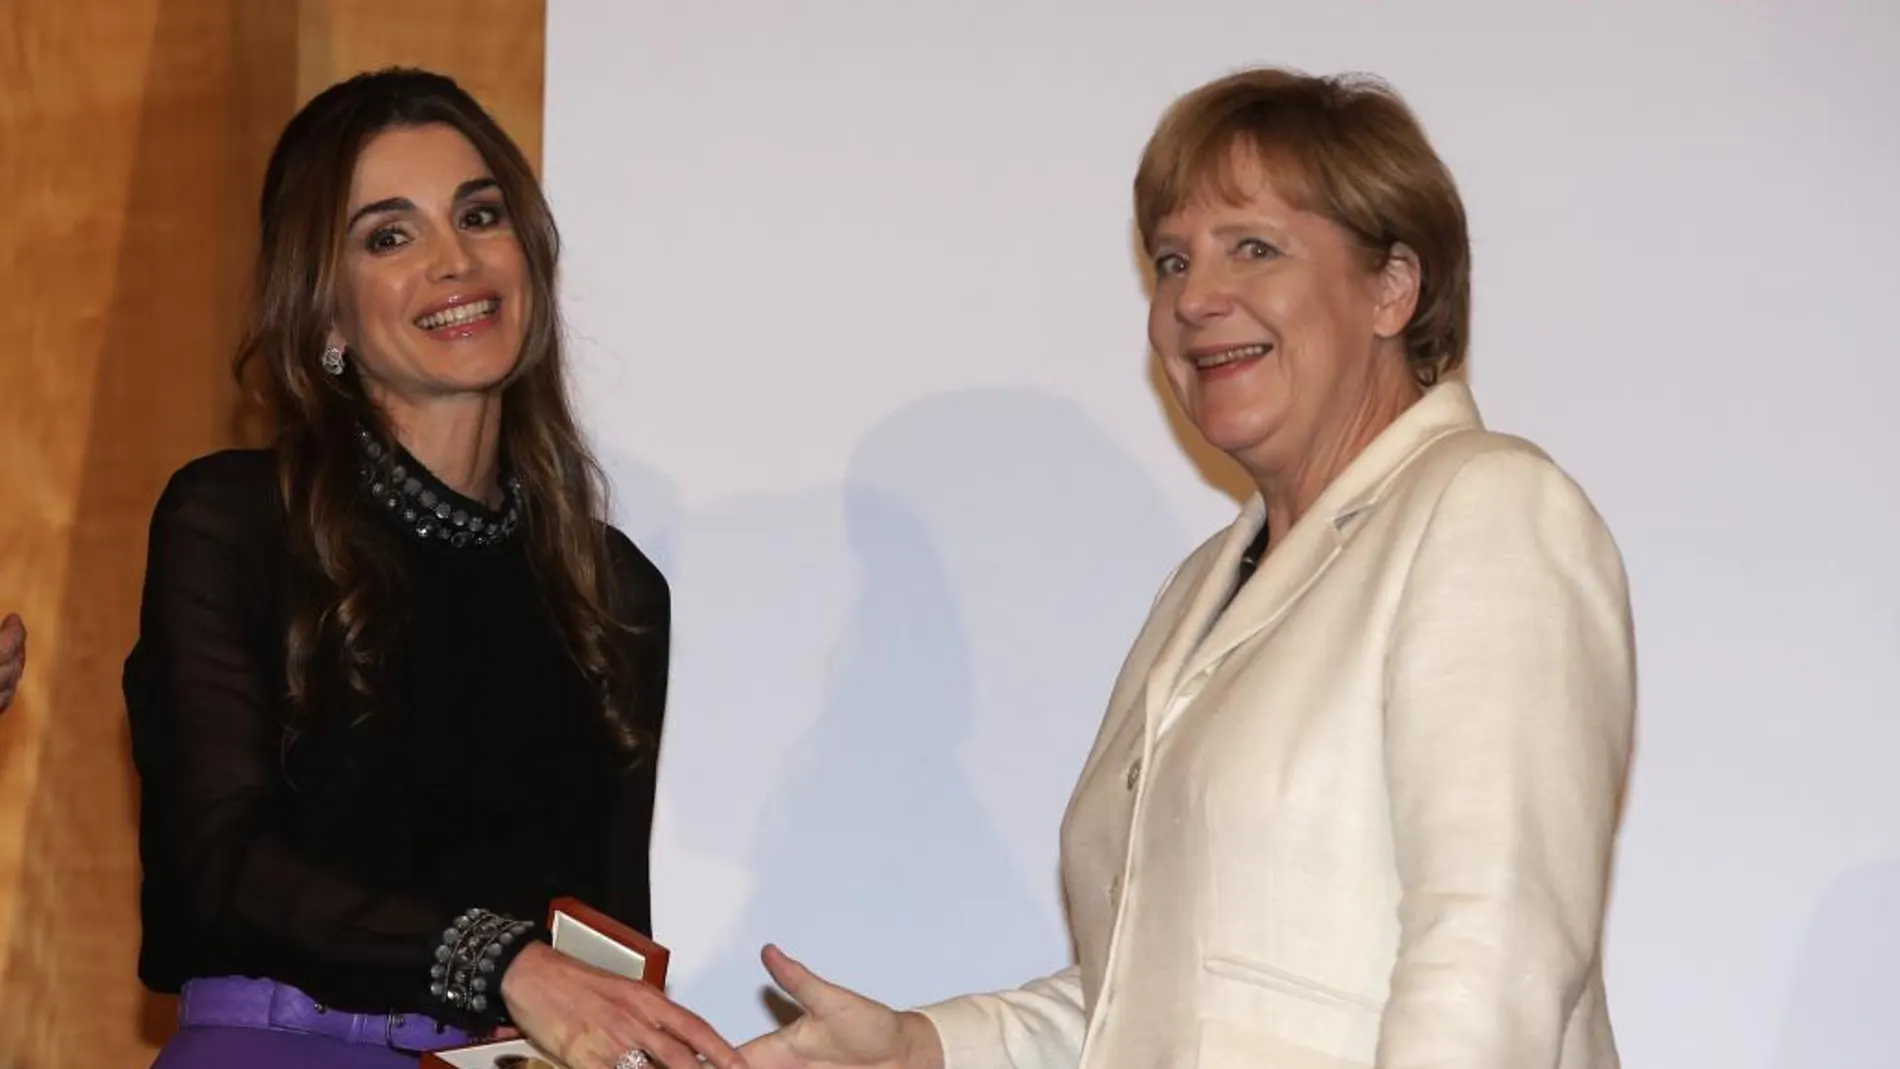 La Canciller alemana, Angela Merkel, felicita a la reina Rania de Jordania tras la condecoración